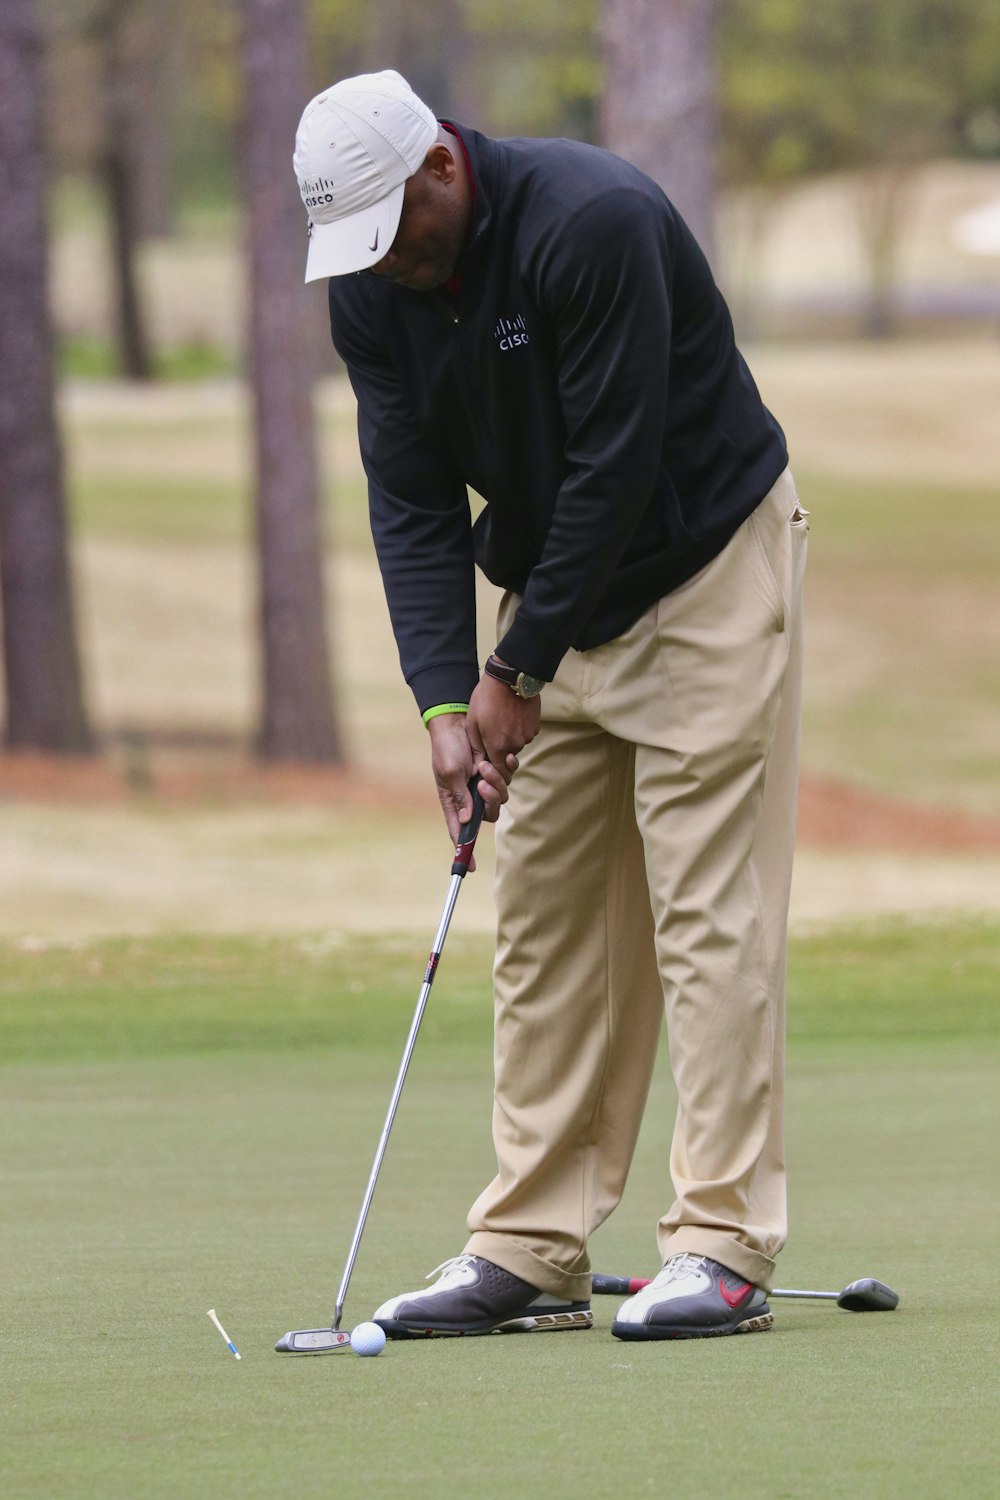 Hombre con chaqueta negra y pantalones beige jugando al golf durante el día